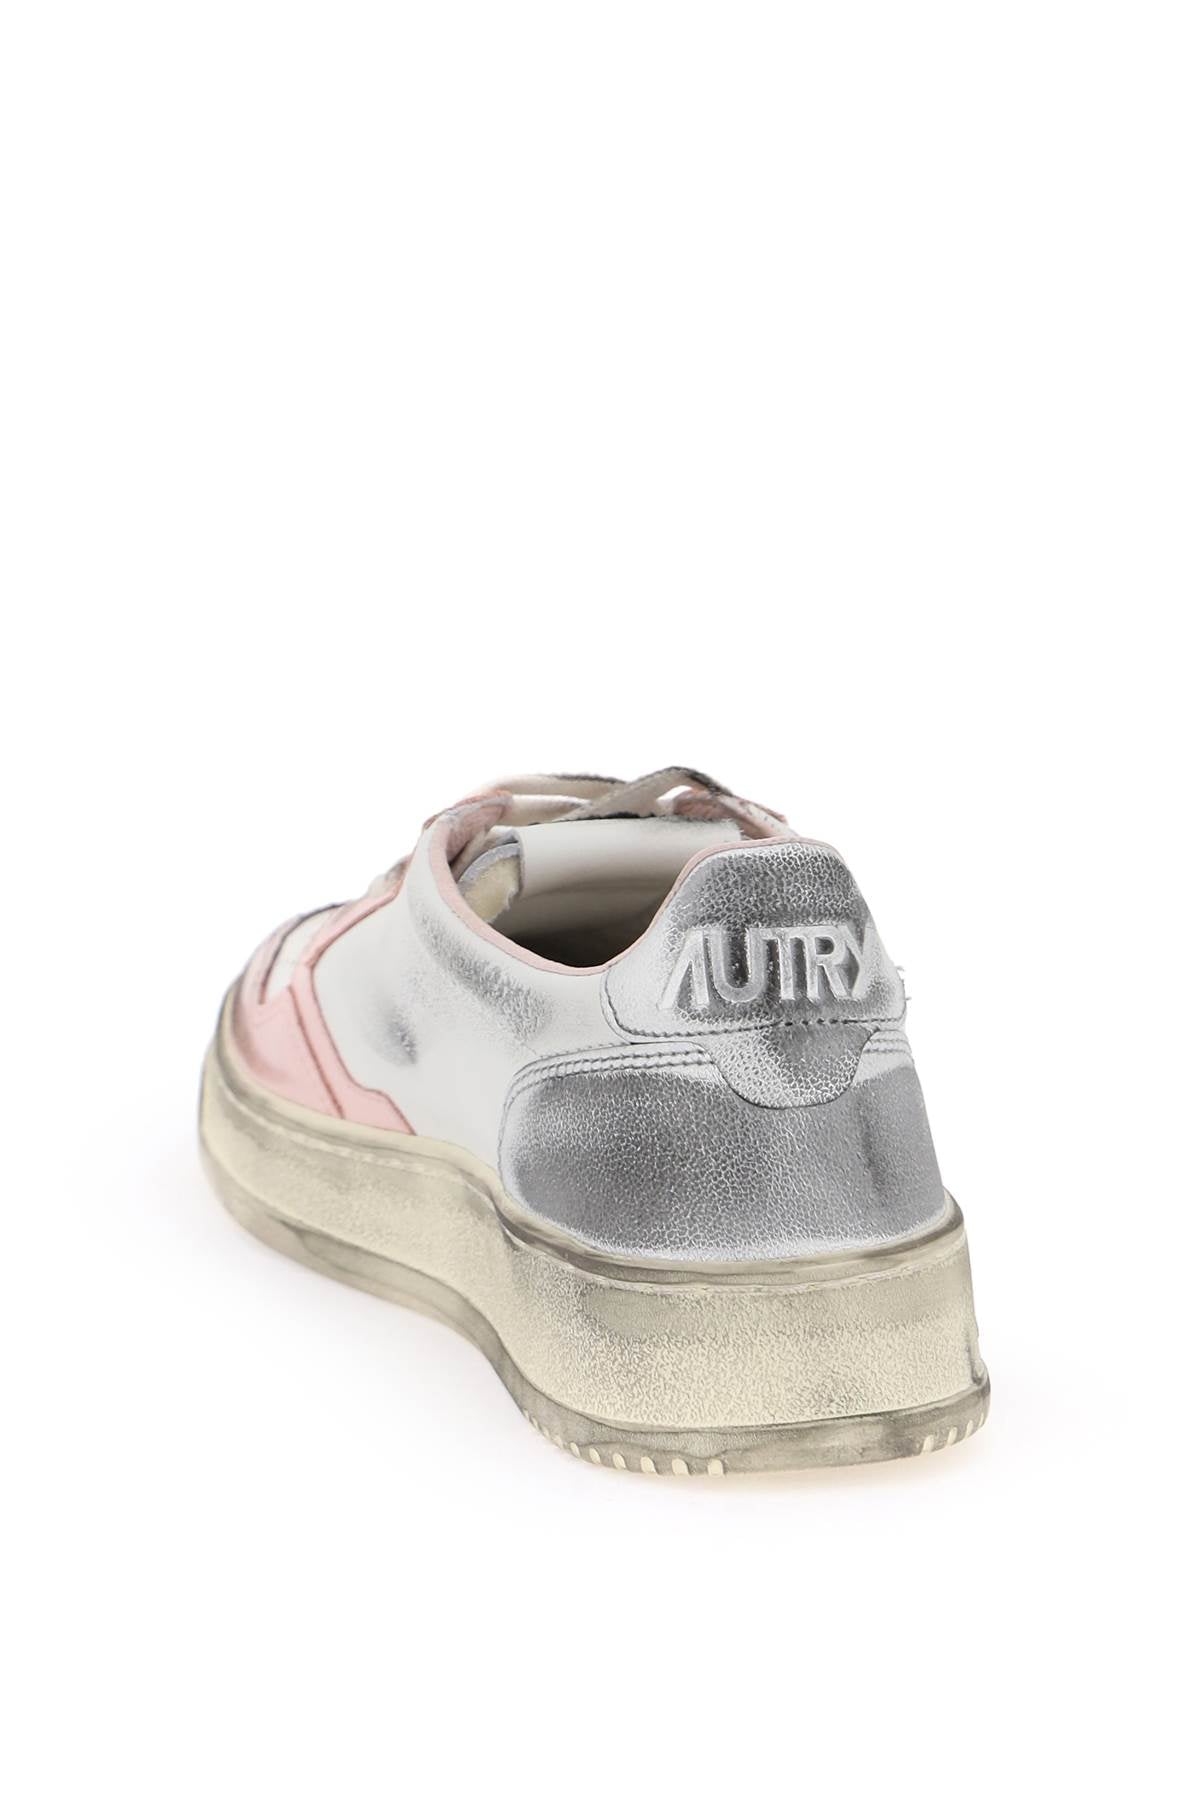 Autry Autry medalist low super vintage sneakers